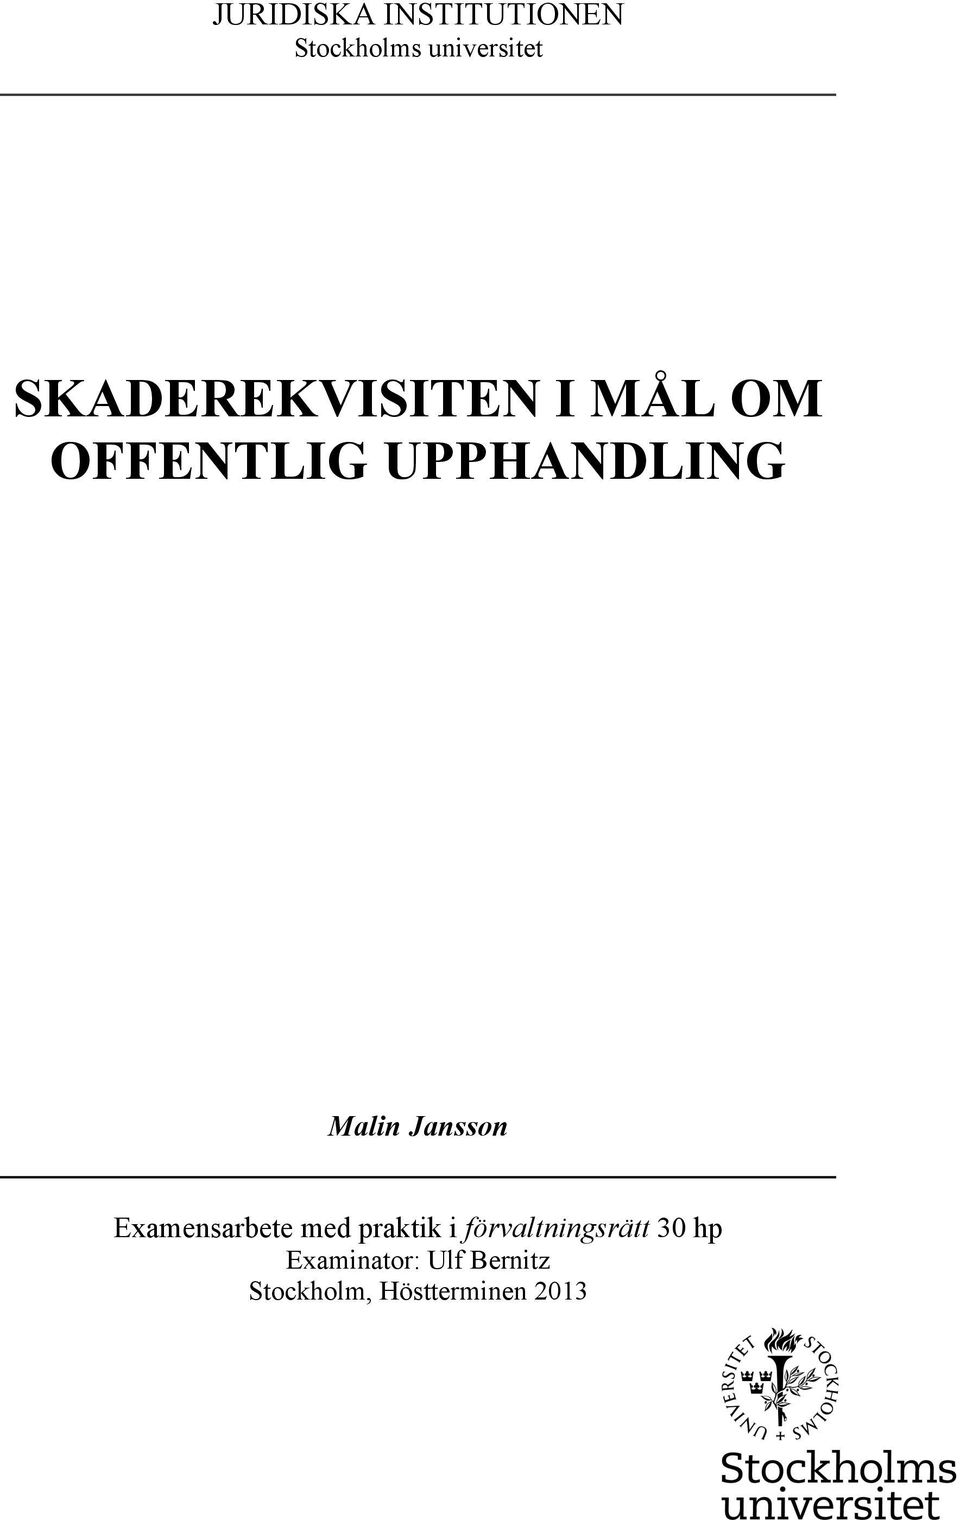 Jansson Examensarbete med praktik i förvaltningsrätt